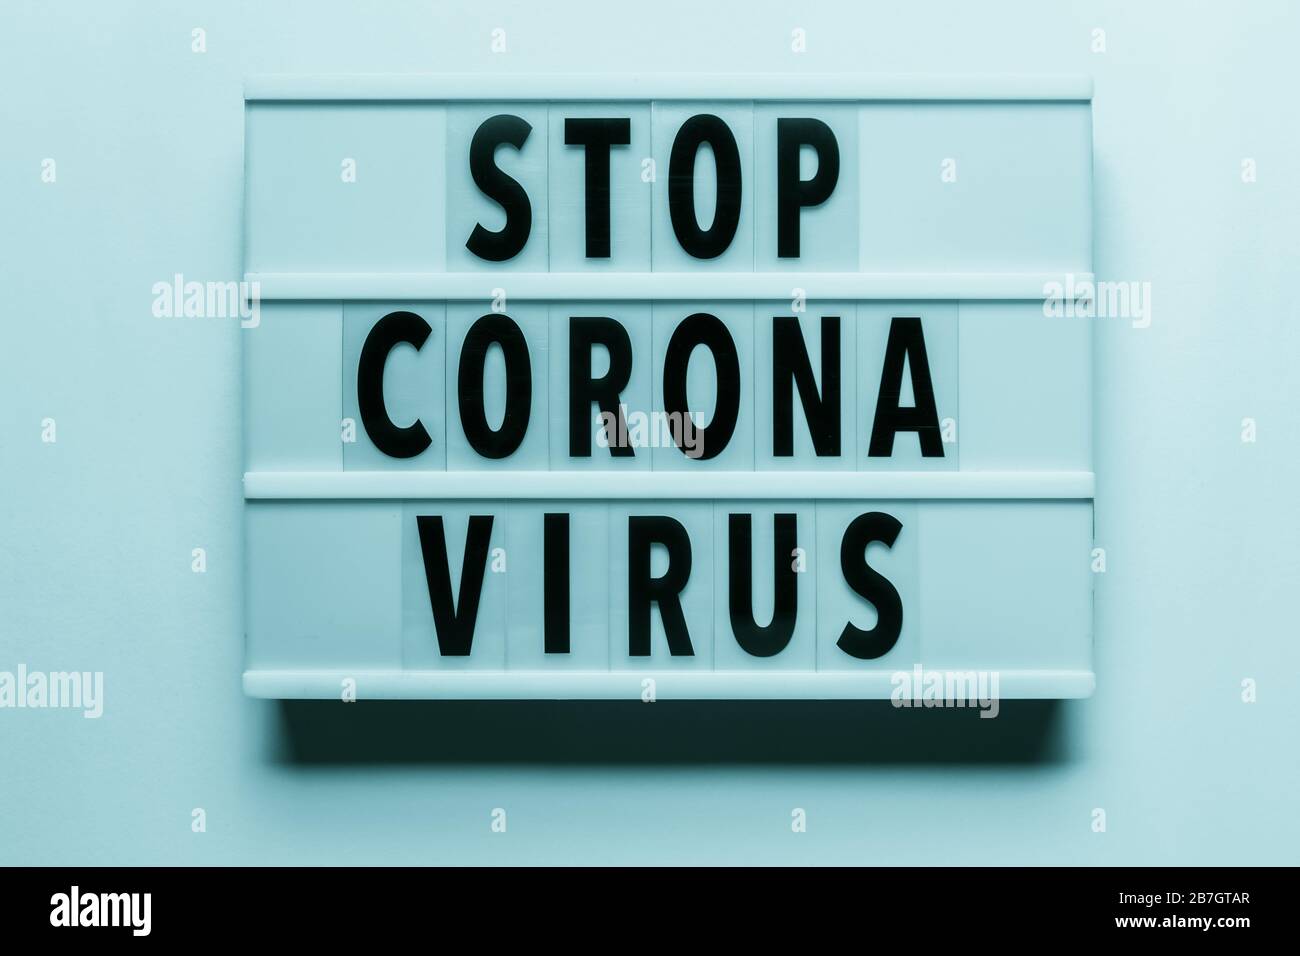 'Virus Corona' écrit dans un texte de visionneuse Banque D'Images